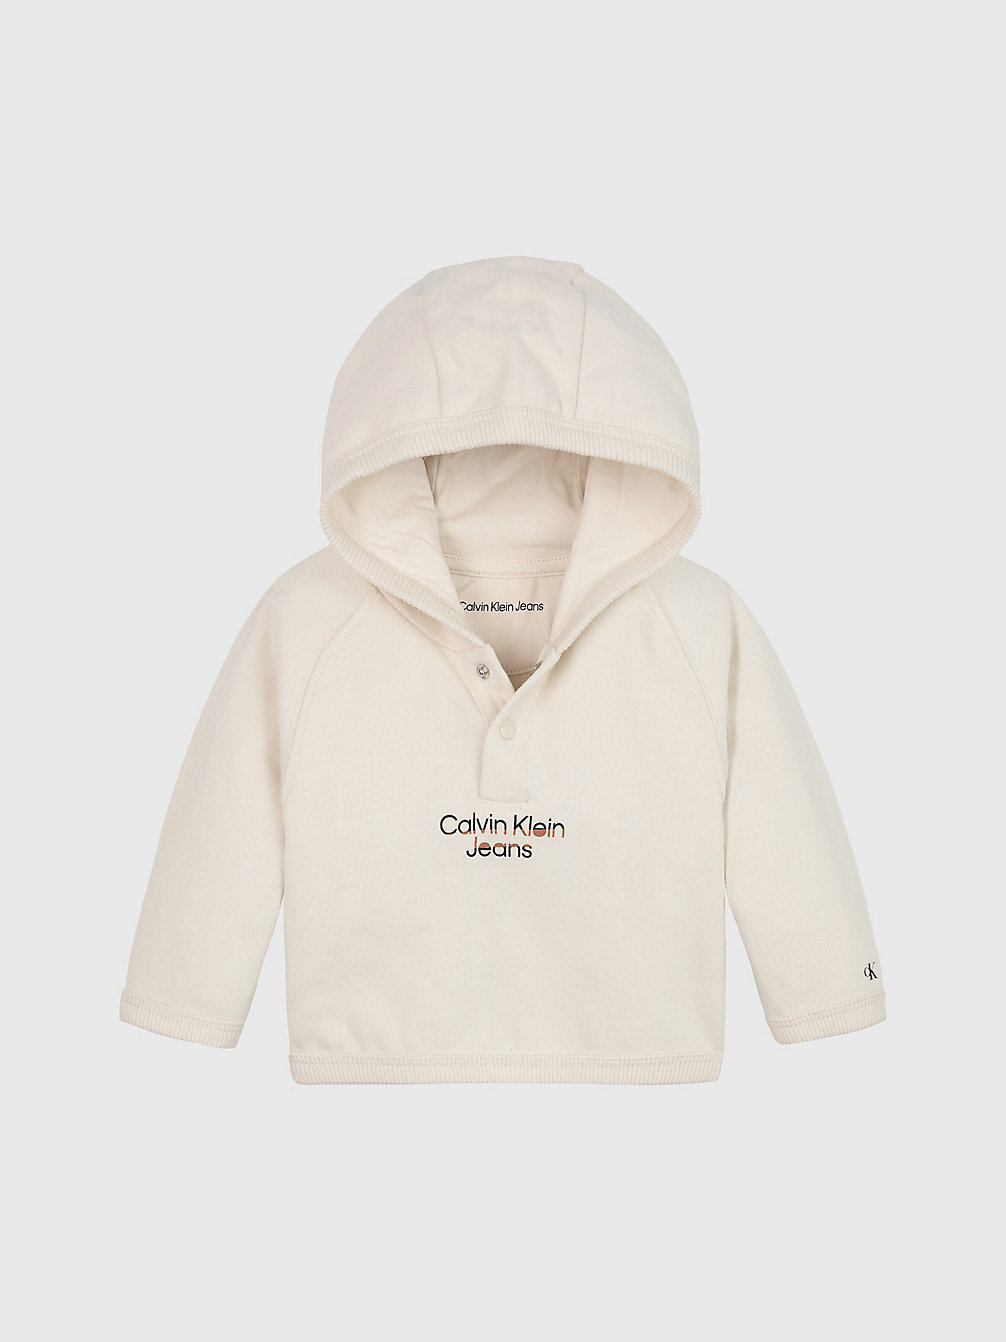 WHITECAP GRAY Sweat À Capuche En Polaire Avec Logo Pour Nouveau-Né undefined newborn Calvin Klein